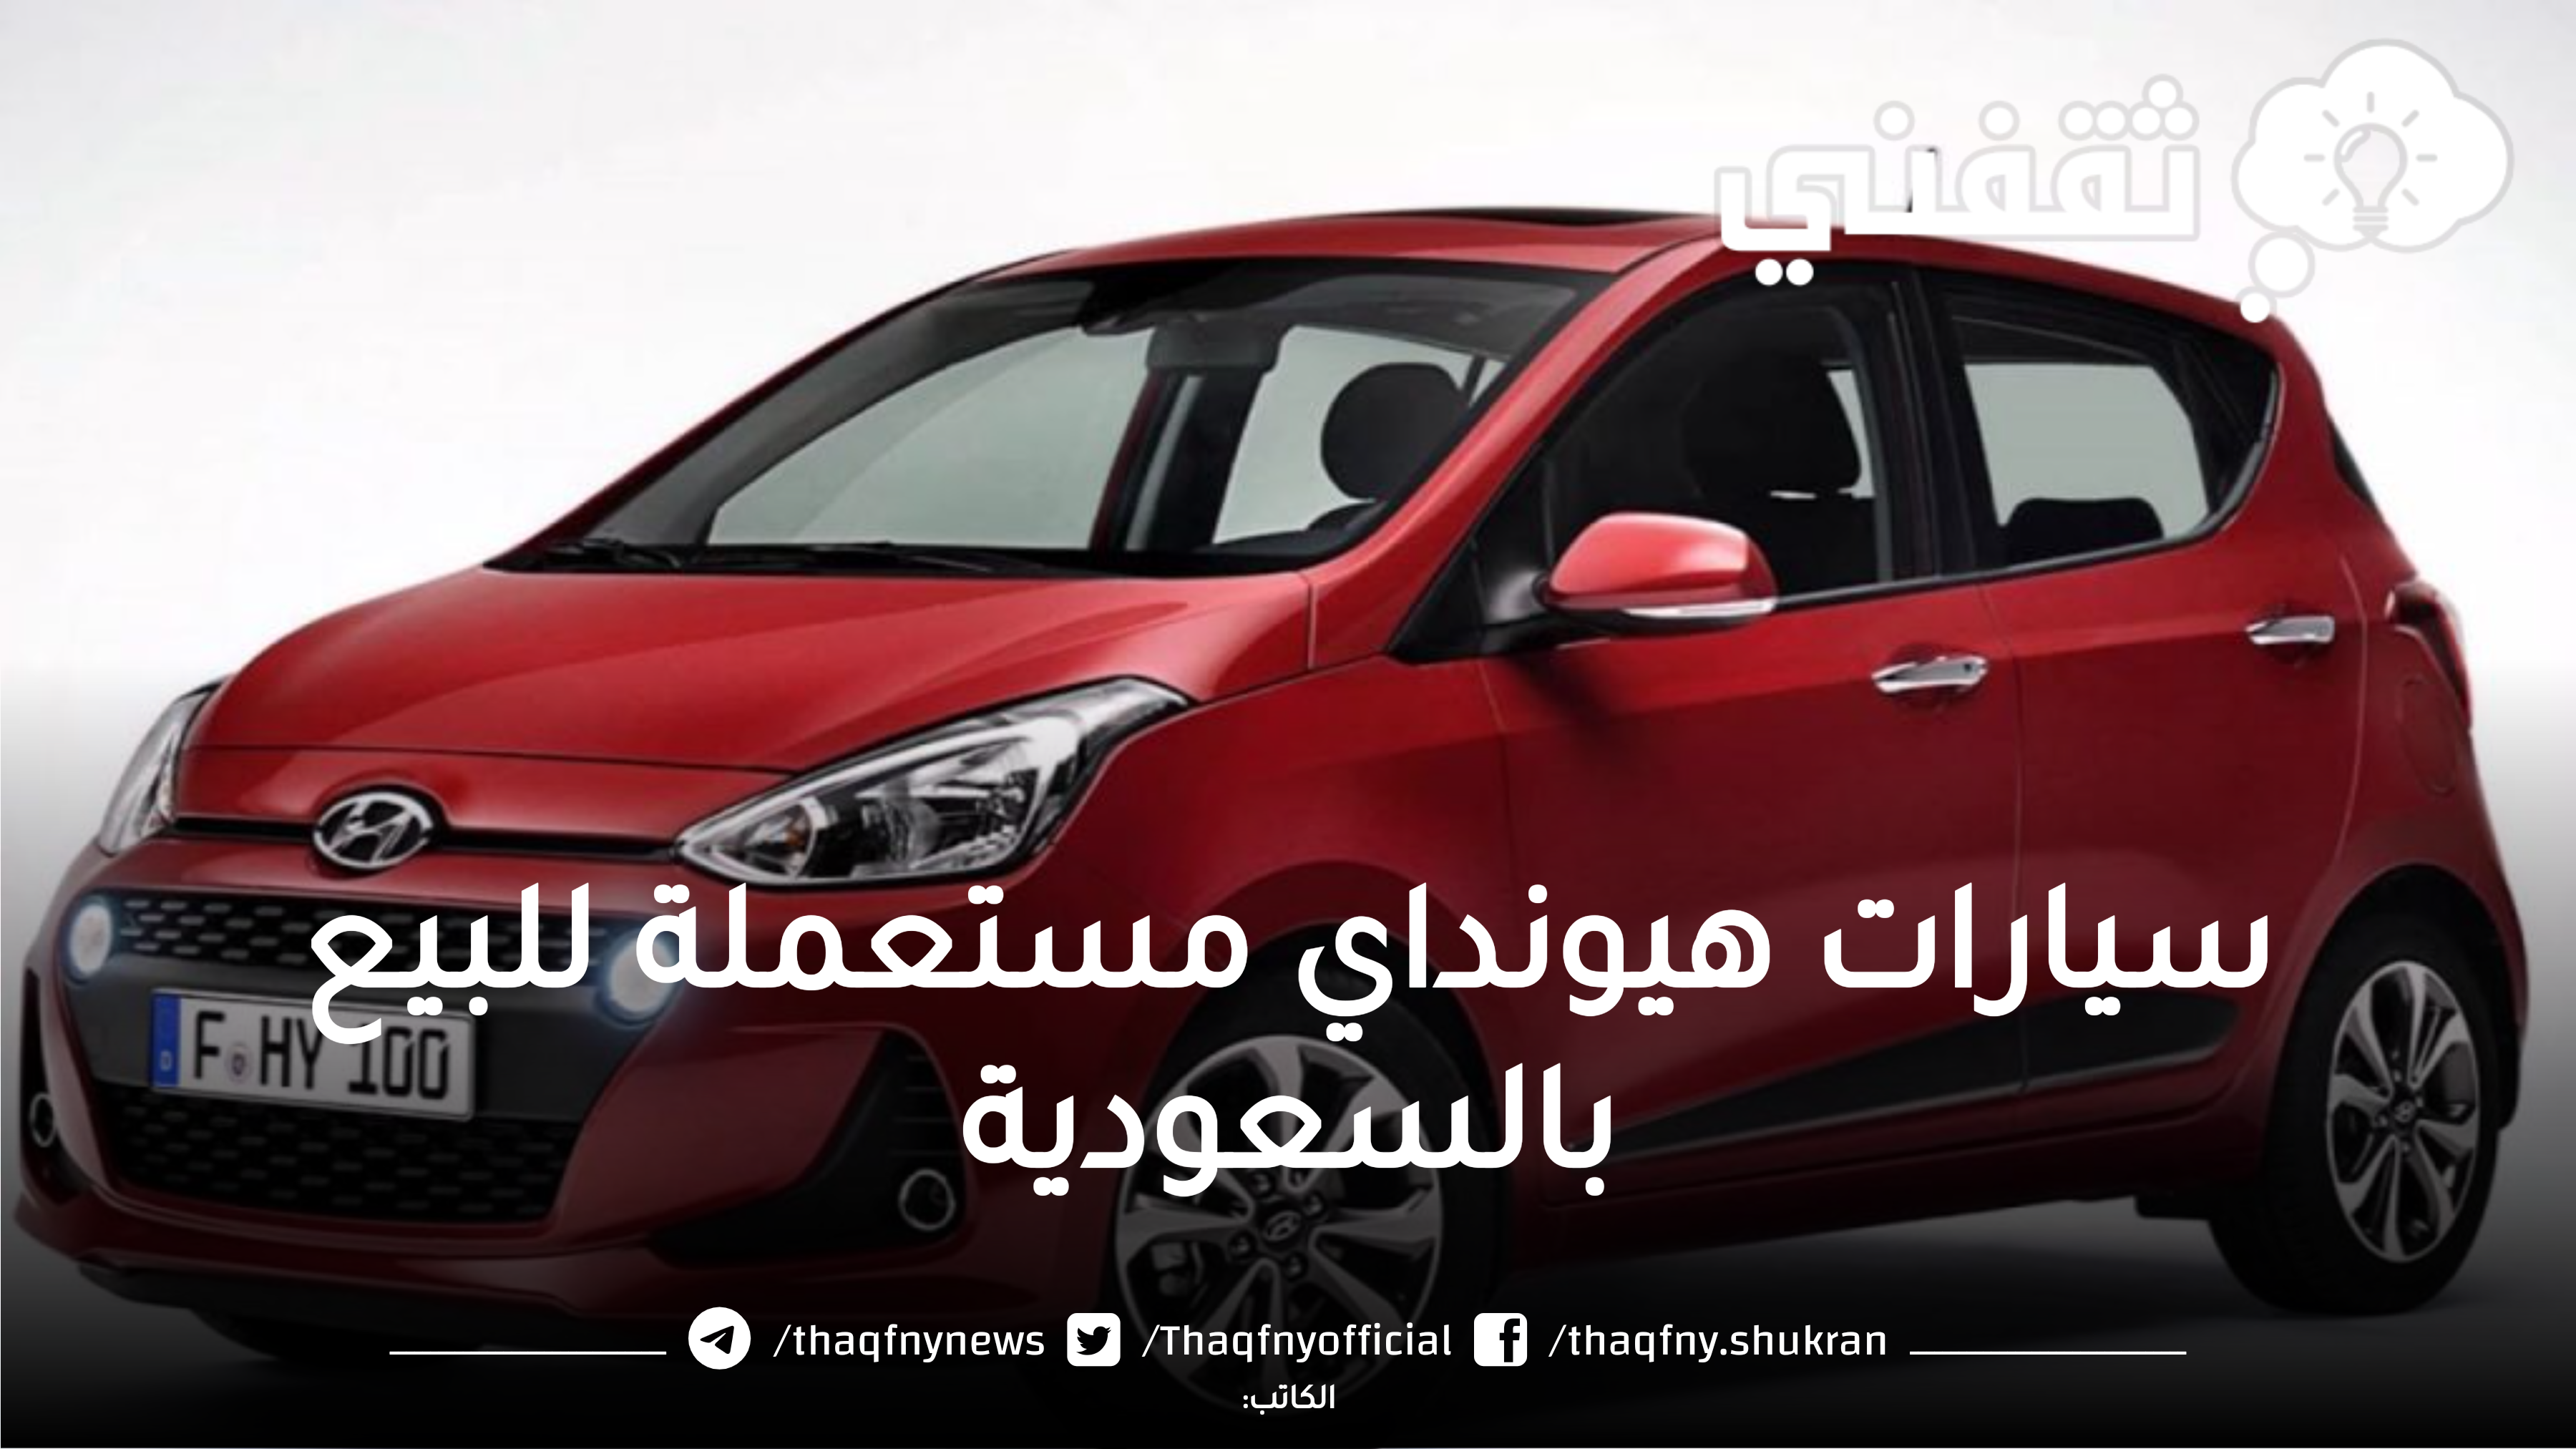 سيارات هيونداي مستعملة للبيع بالسعودية بحالة جيدة وسعر مُخفض